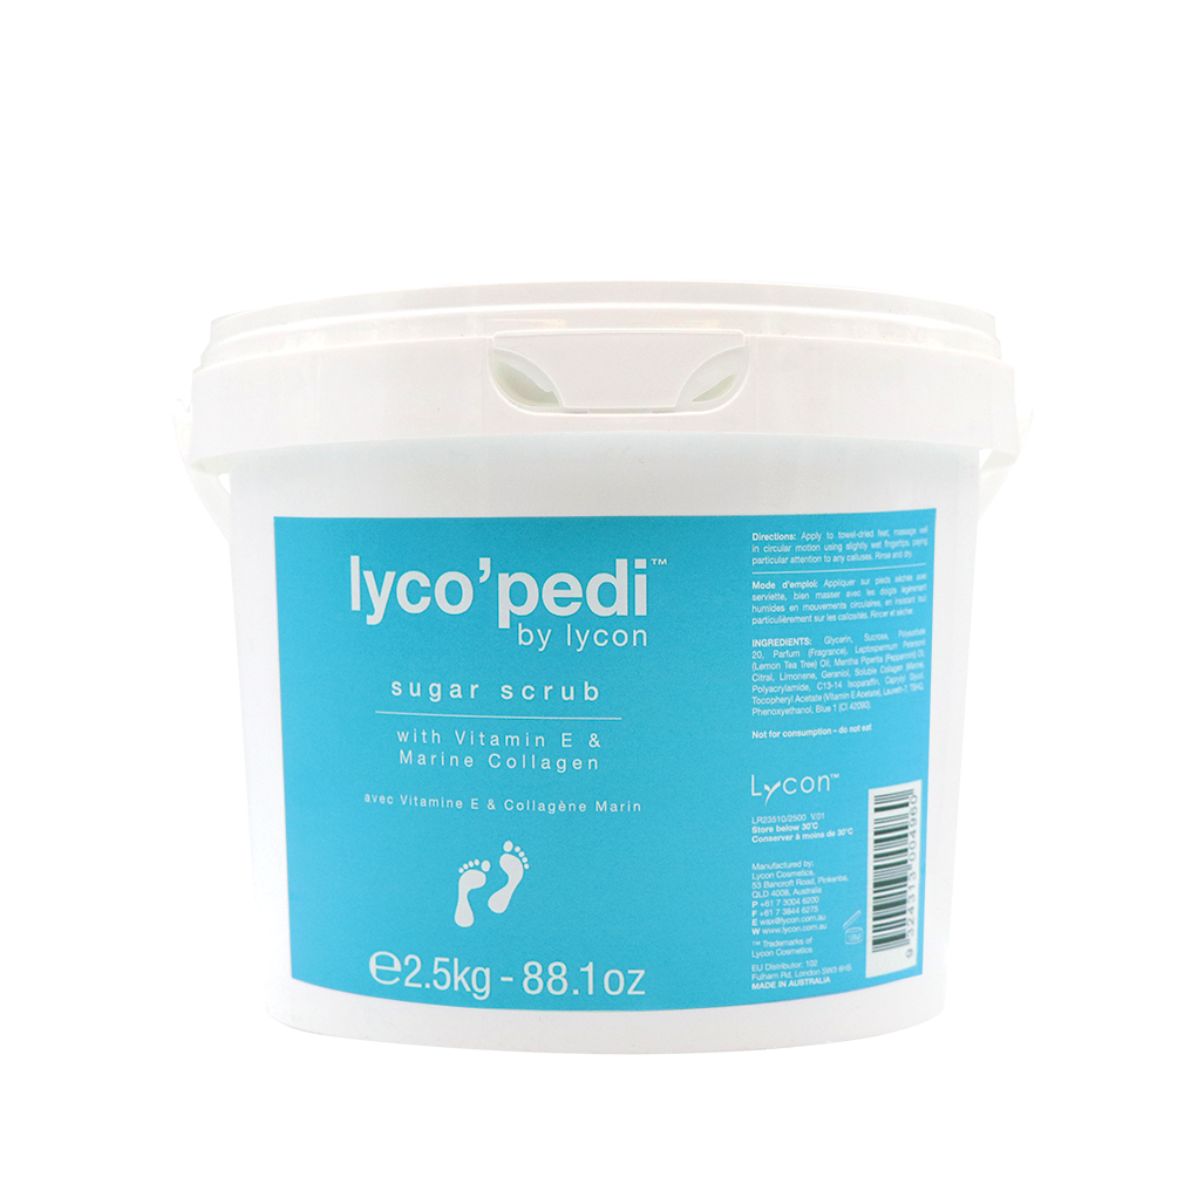 Lyco'Pedi Sugar Scrub- 2.5kg